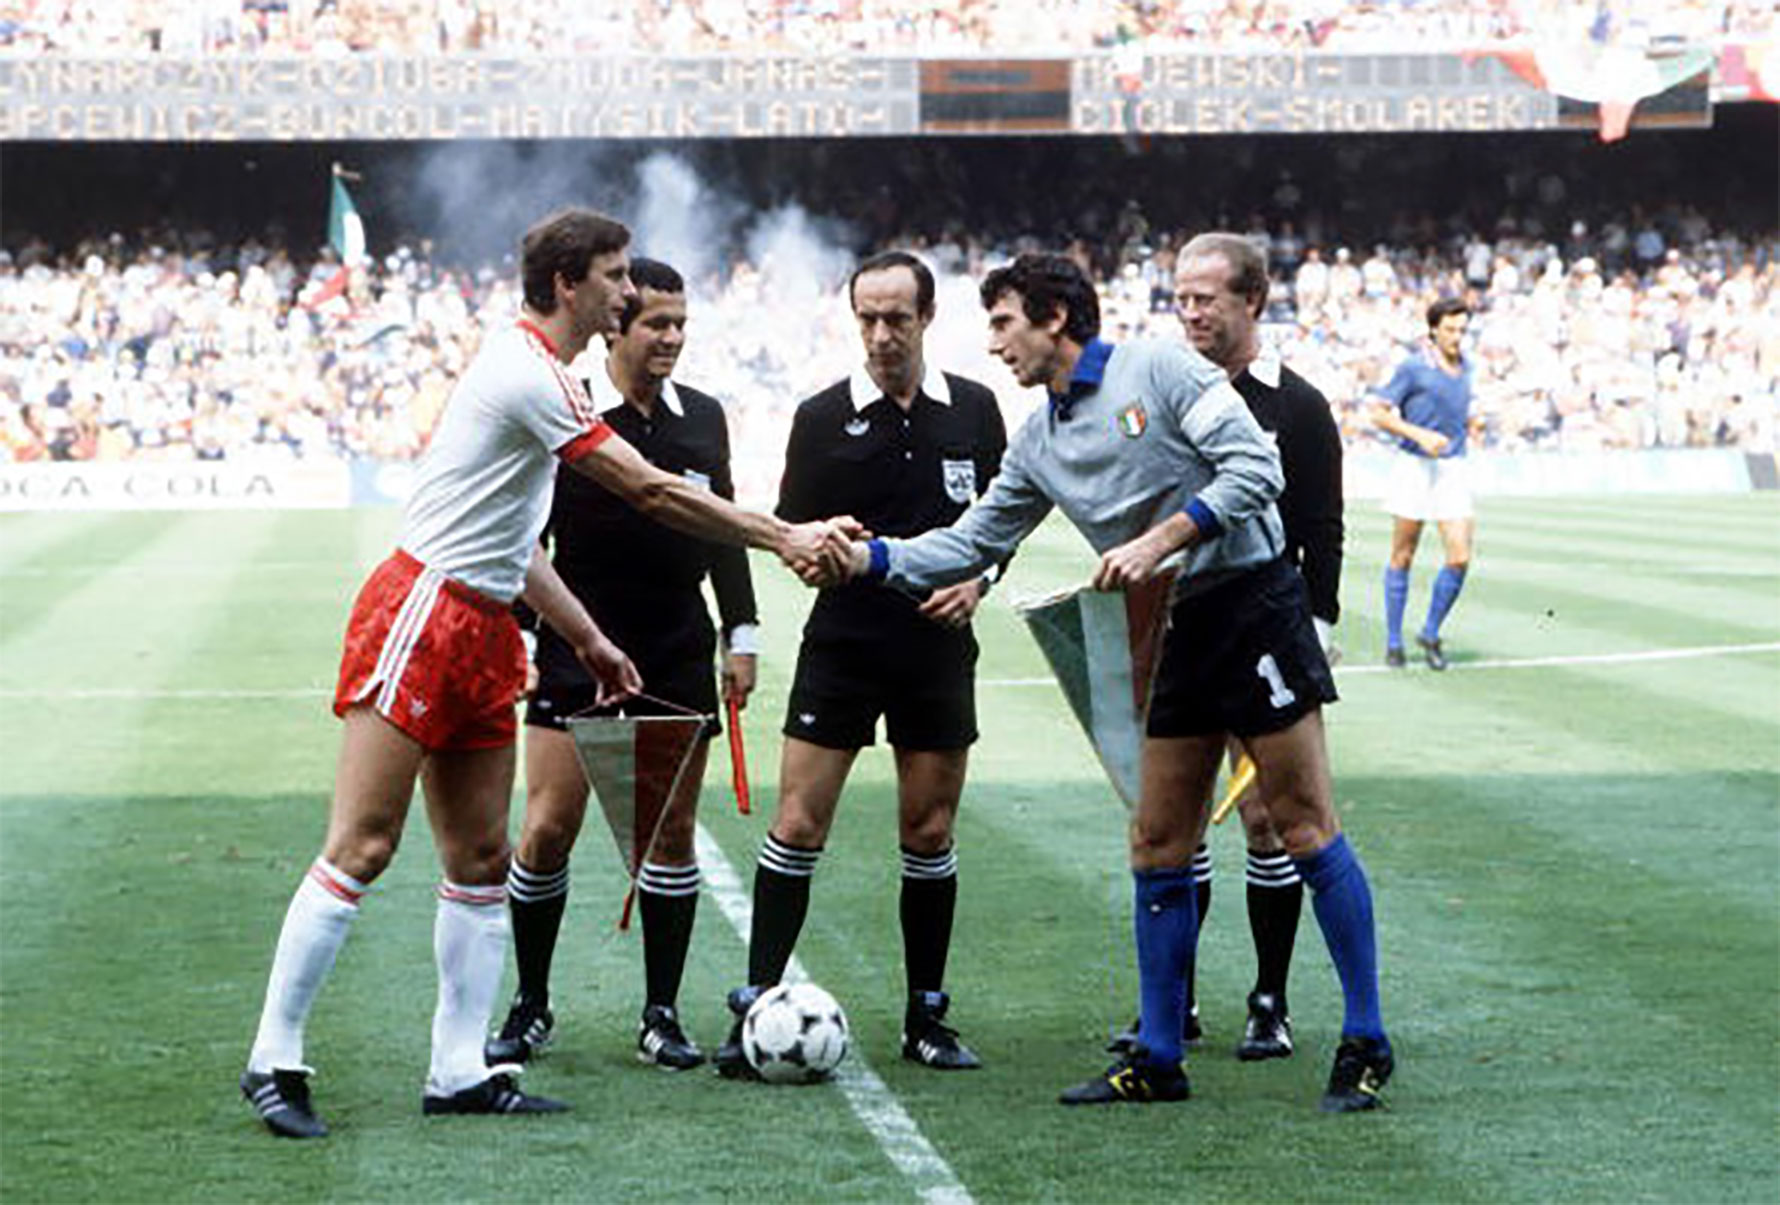 Wladislaw Zmuda shakes hands with Dino Zoff